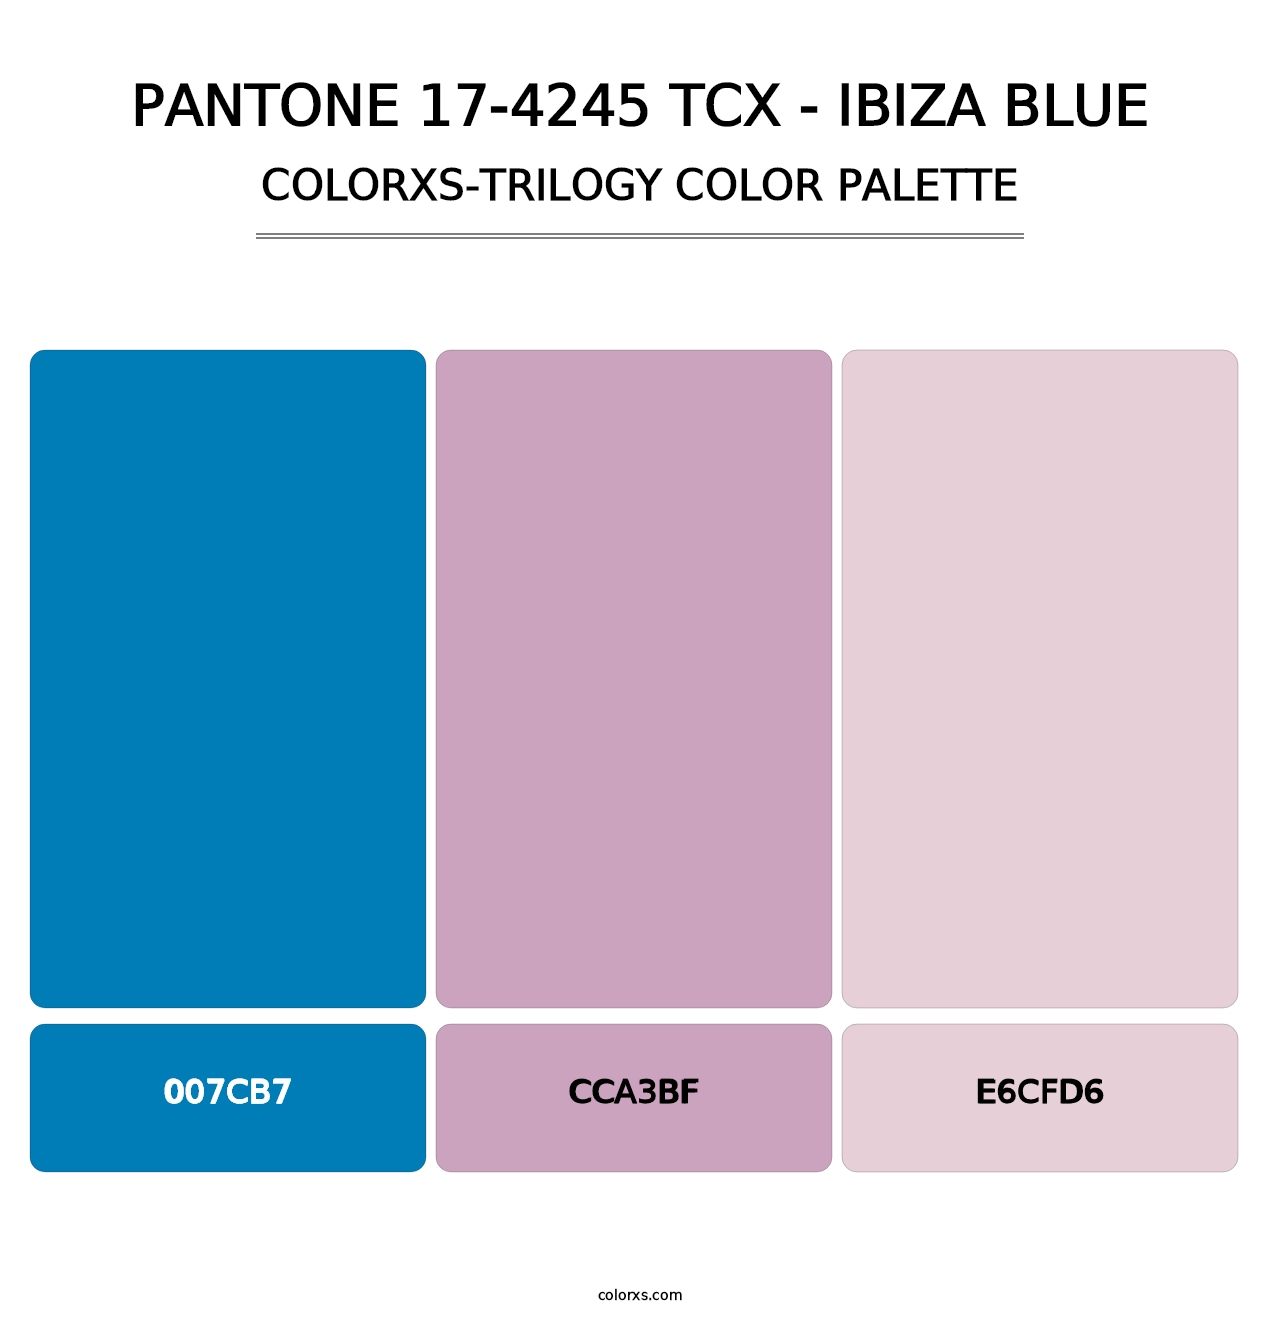 PANTONE 17-4245 TCX - Ibiza Blue - Colorxs Trilogy Palette